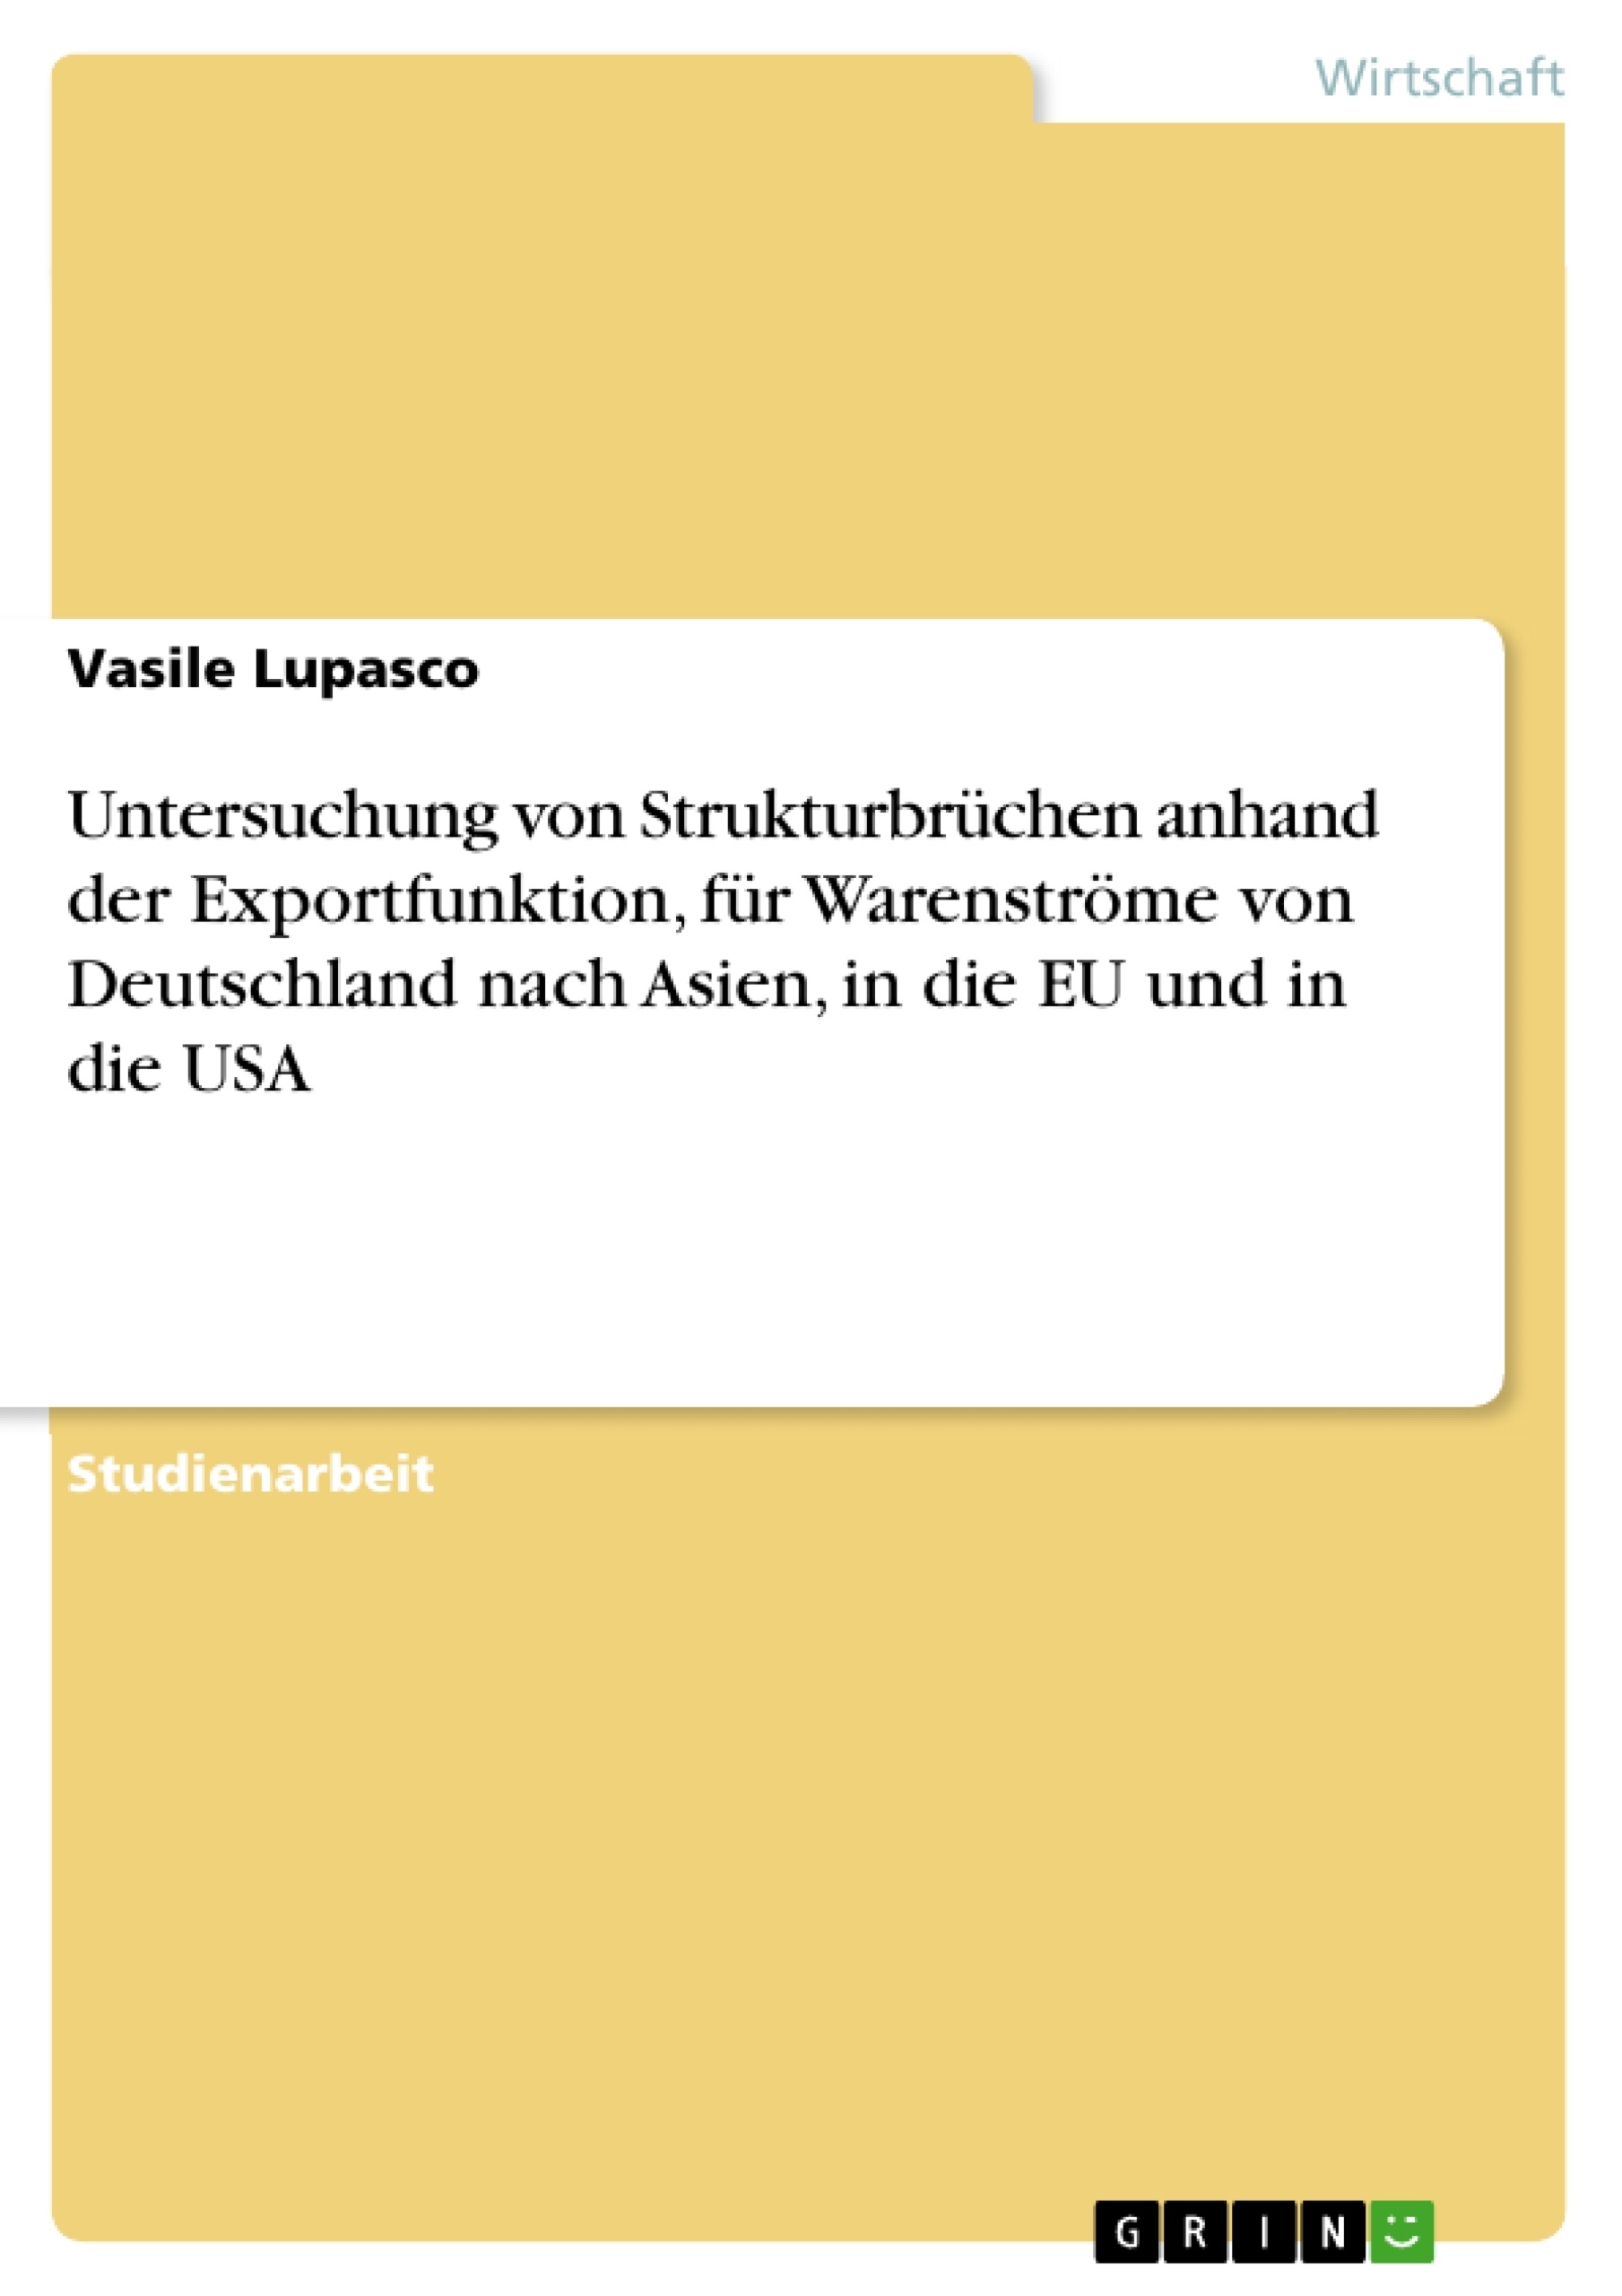 Title: Untersuchung von Strukturbrüchen anhand der Exportfunktion, für Warenströme von Deutschland nach Asien, in die EU und in die USA